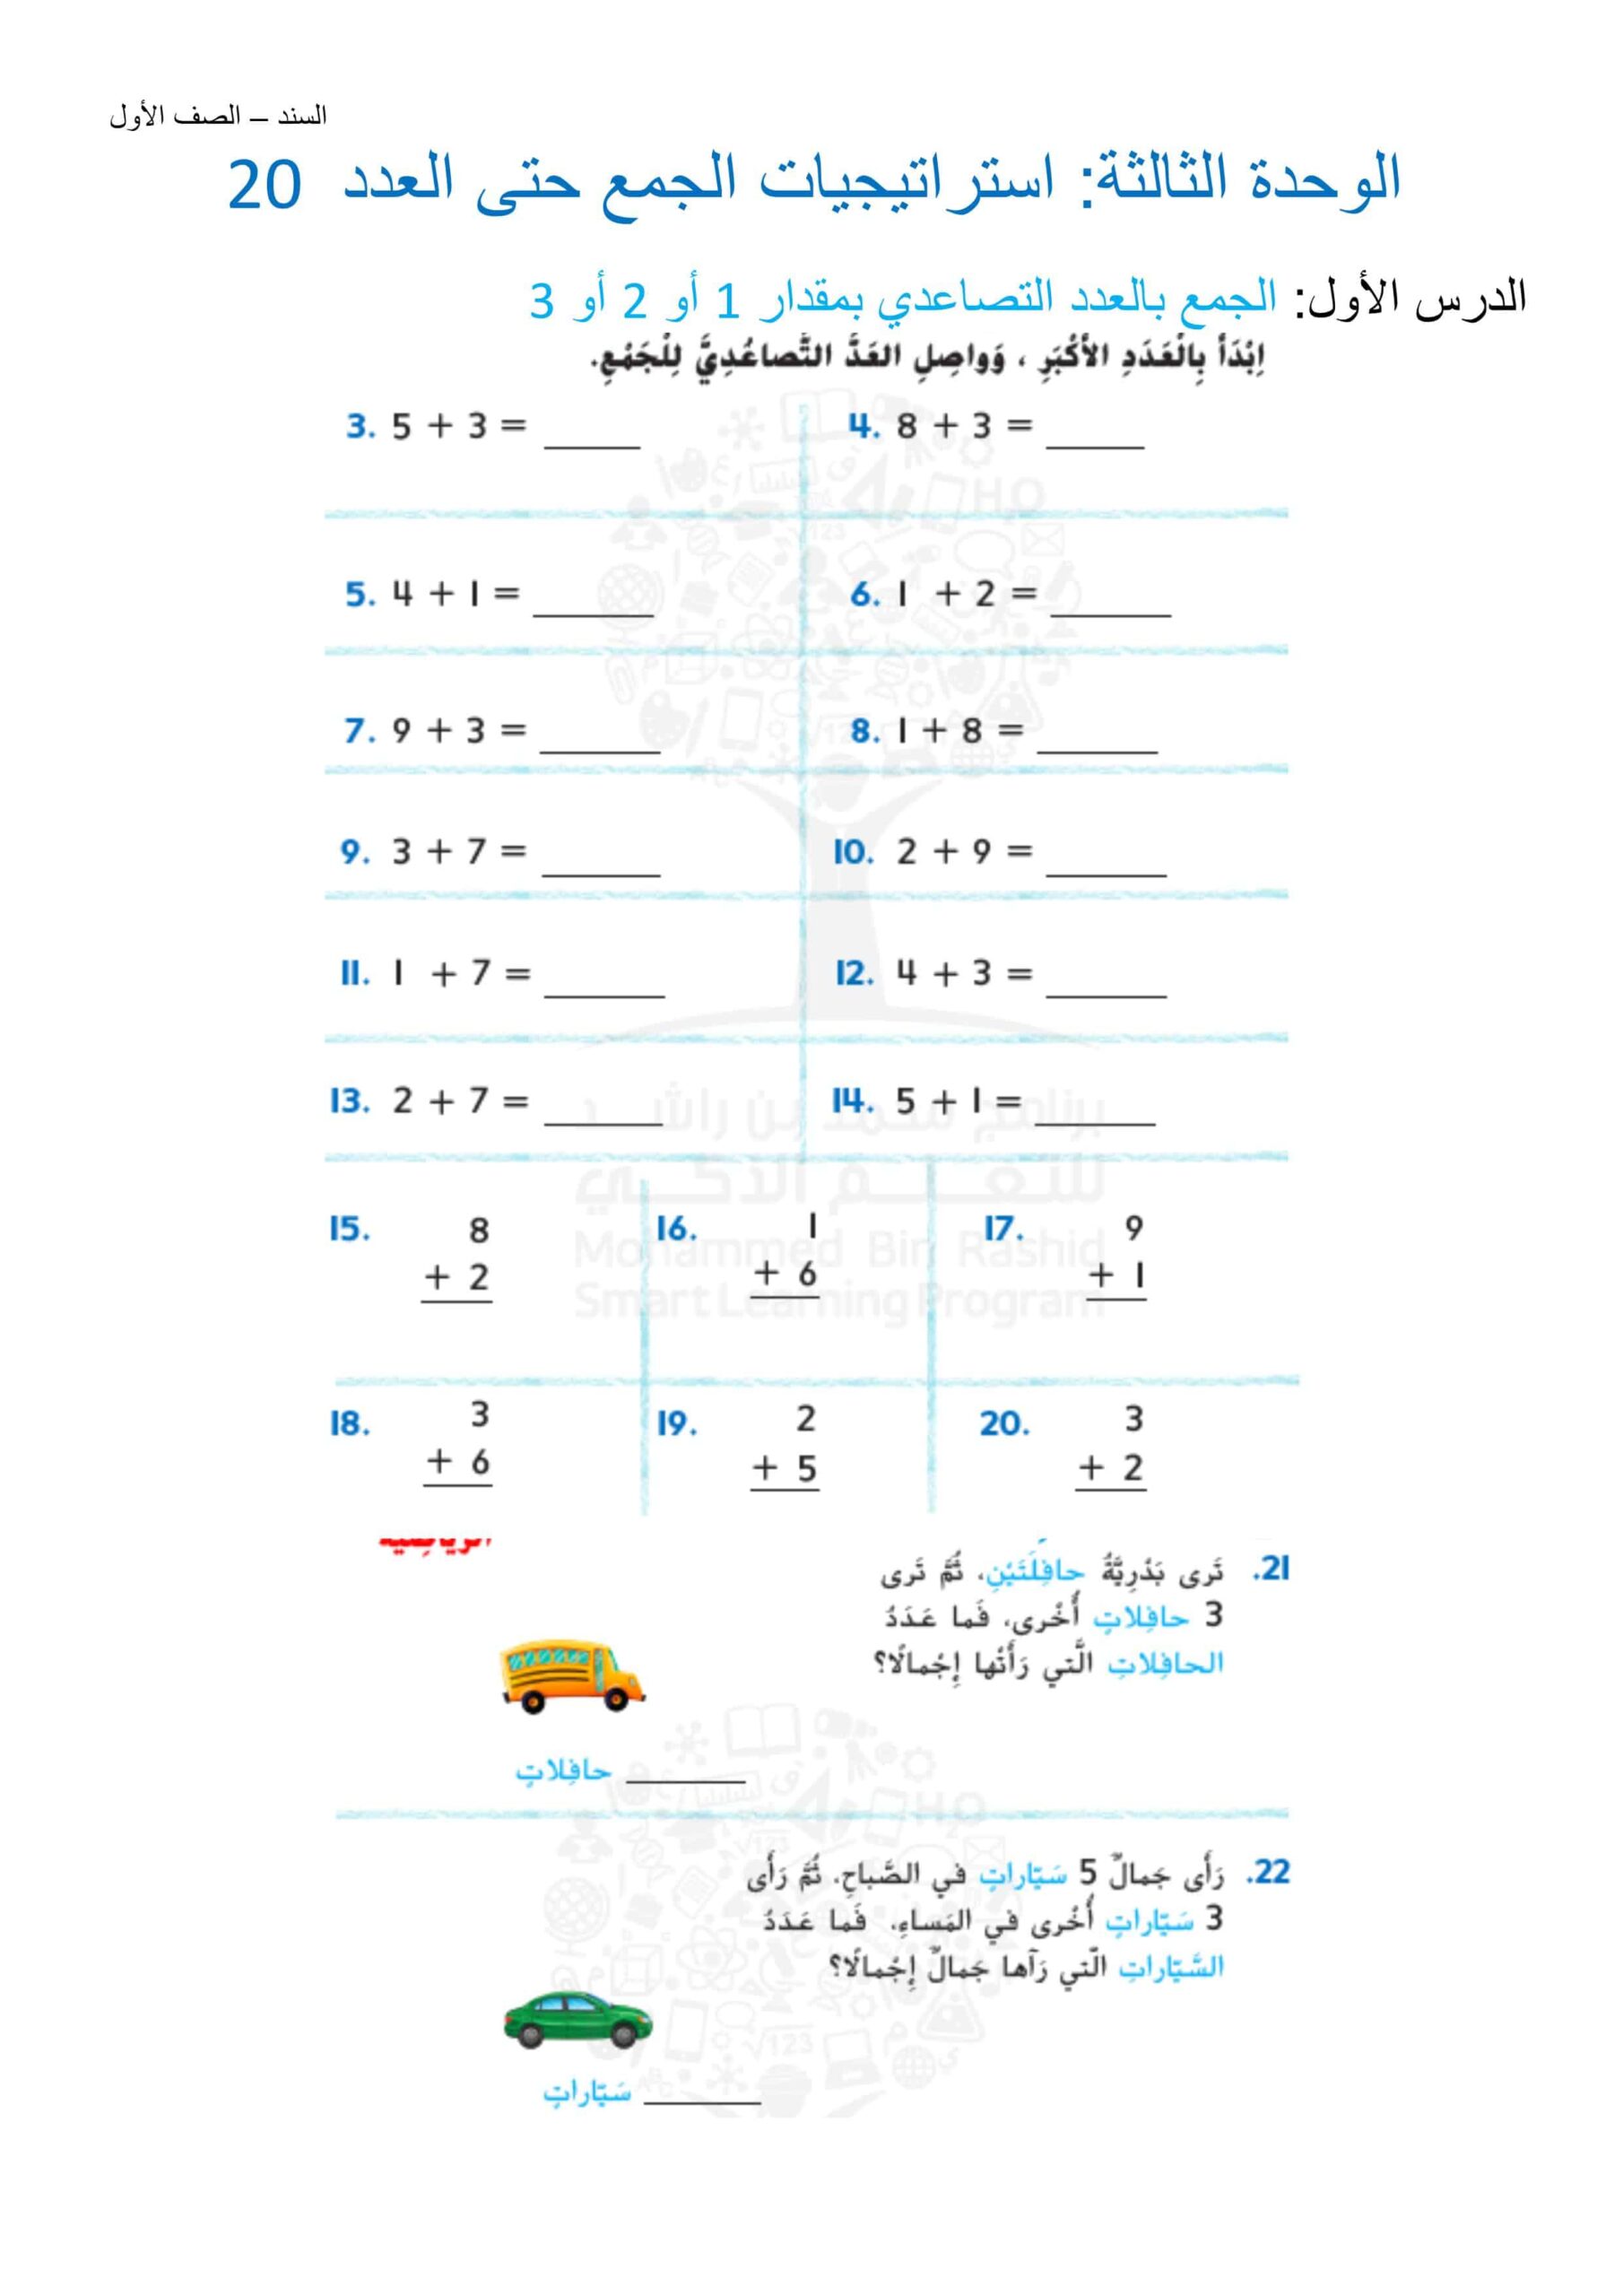 أوراق عمل استراتيجيات الجمع حتى العدد 20 الرياضيات المتكاملة الصف الأول